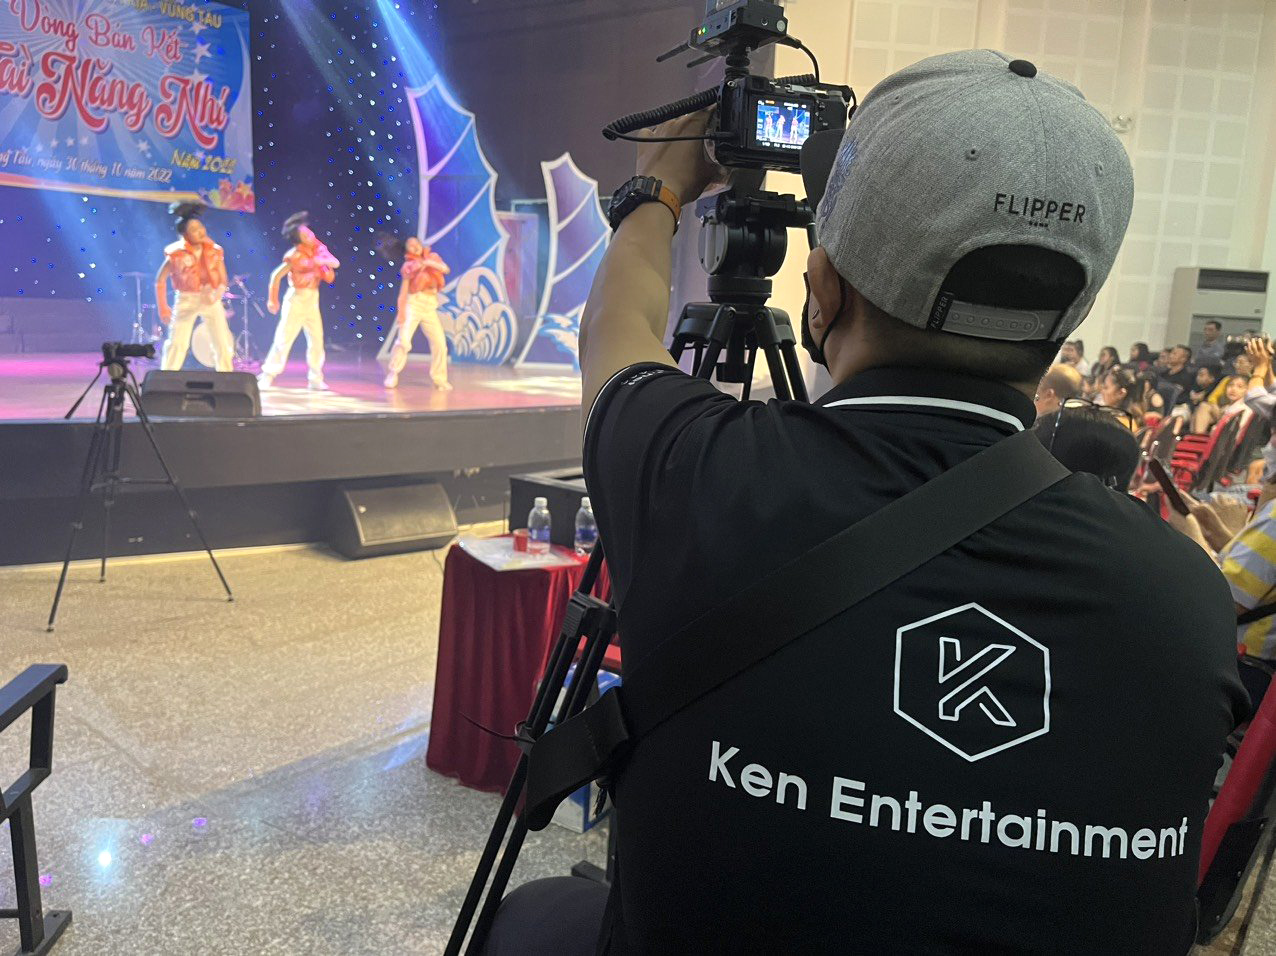 Nhân viên Công ty TNHH Ken Entertainment (209, Bacu, TP.Vũng Tàu) livestream cuộc thi “Tài năng nhí”, do Nhà Thiếu nhi tỉnh tổ chức.